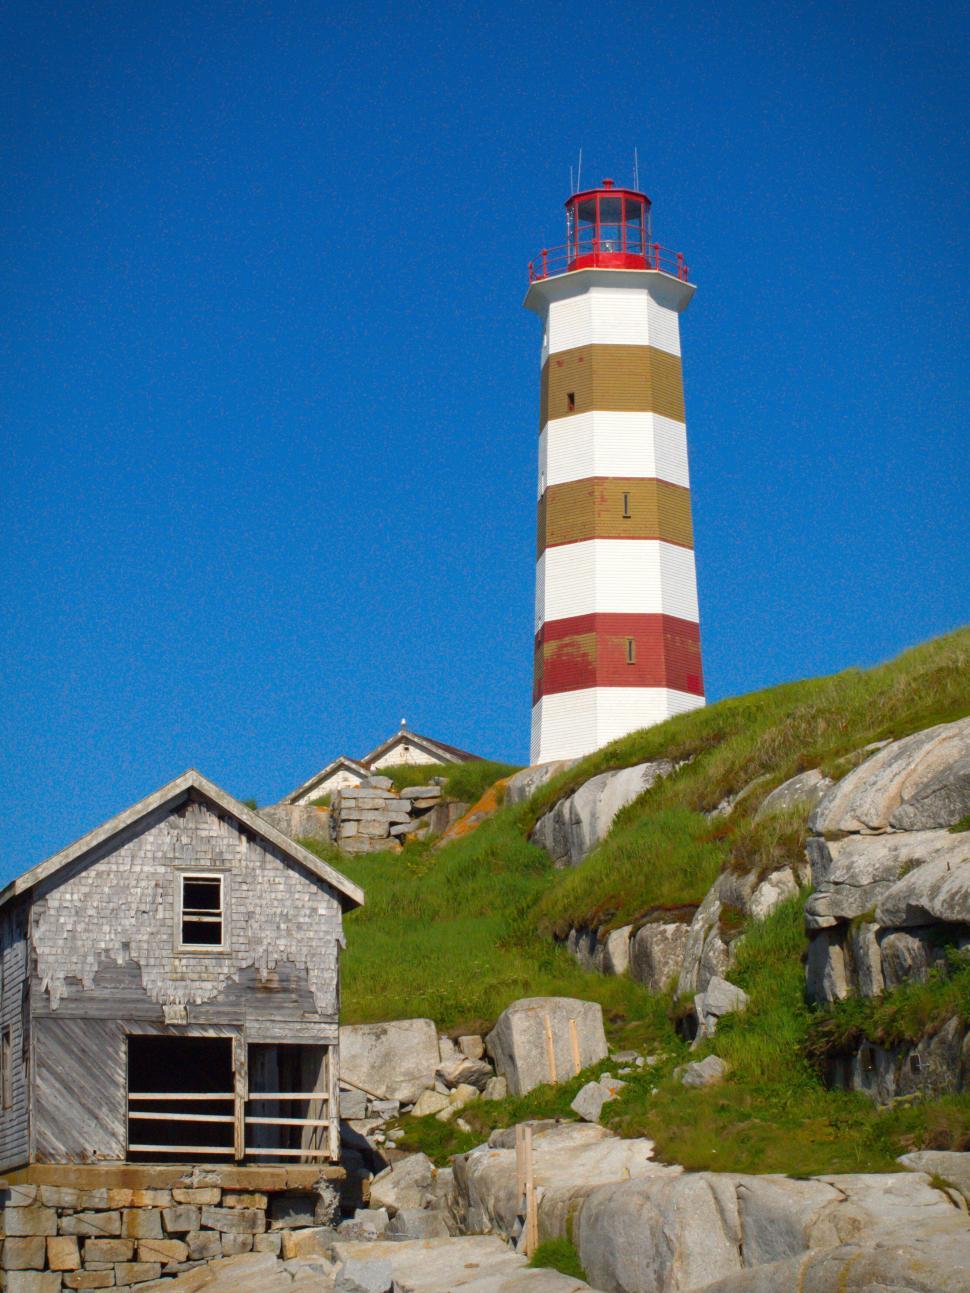 Free Image of Historic lighthouse on coastal landscape 